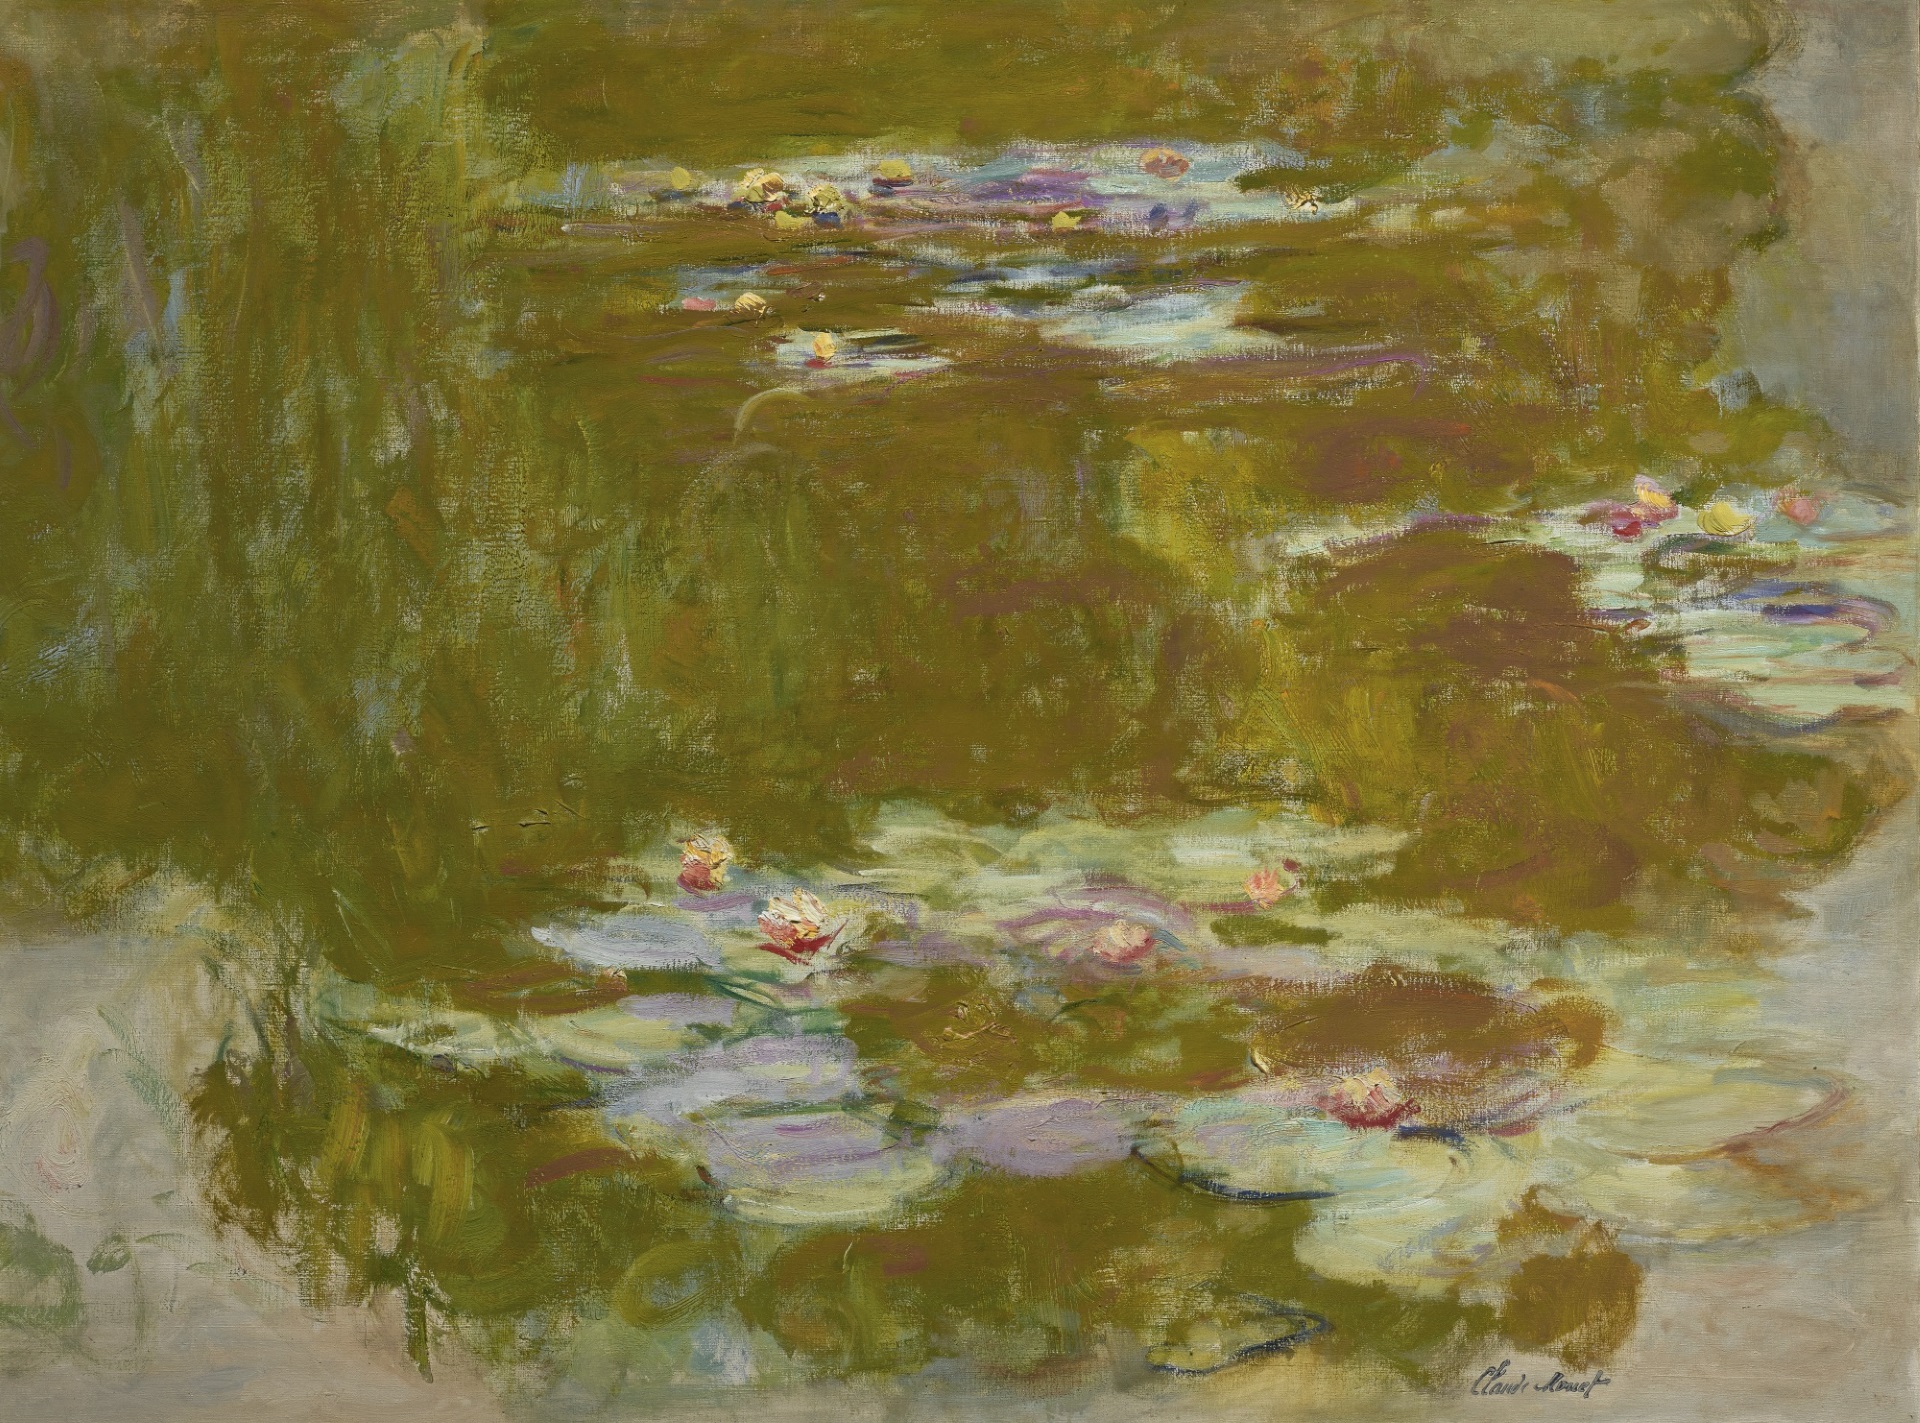 Claude Monet - Le Bassin aux nymphéas 1917-1920